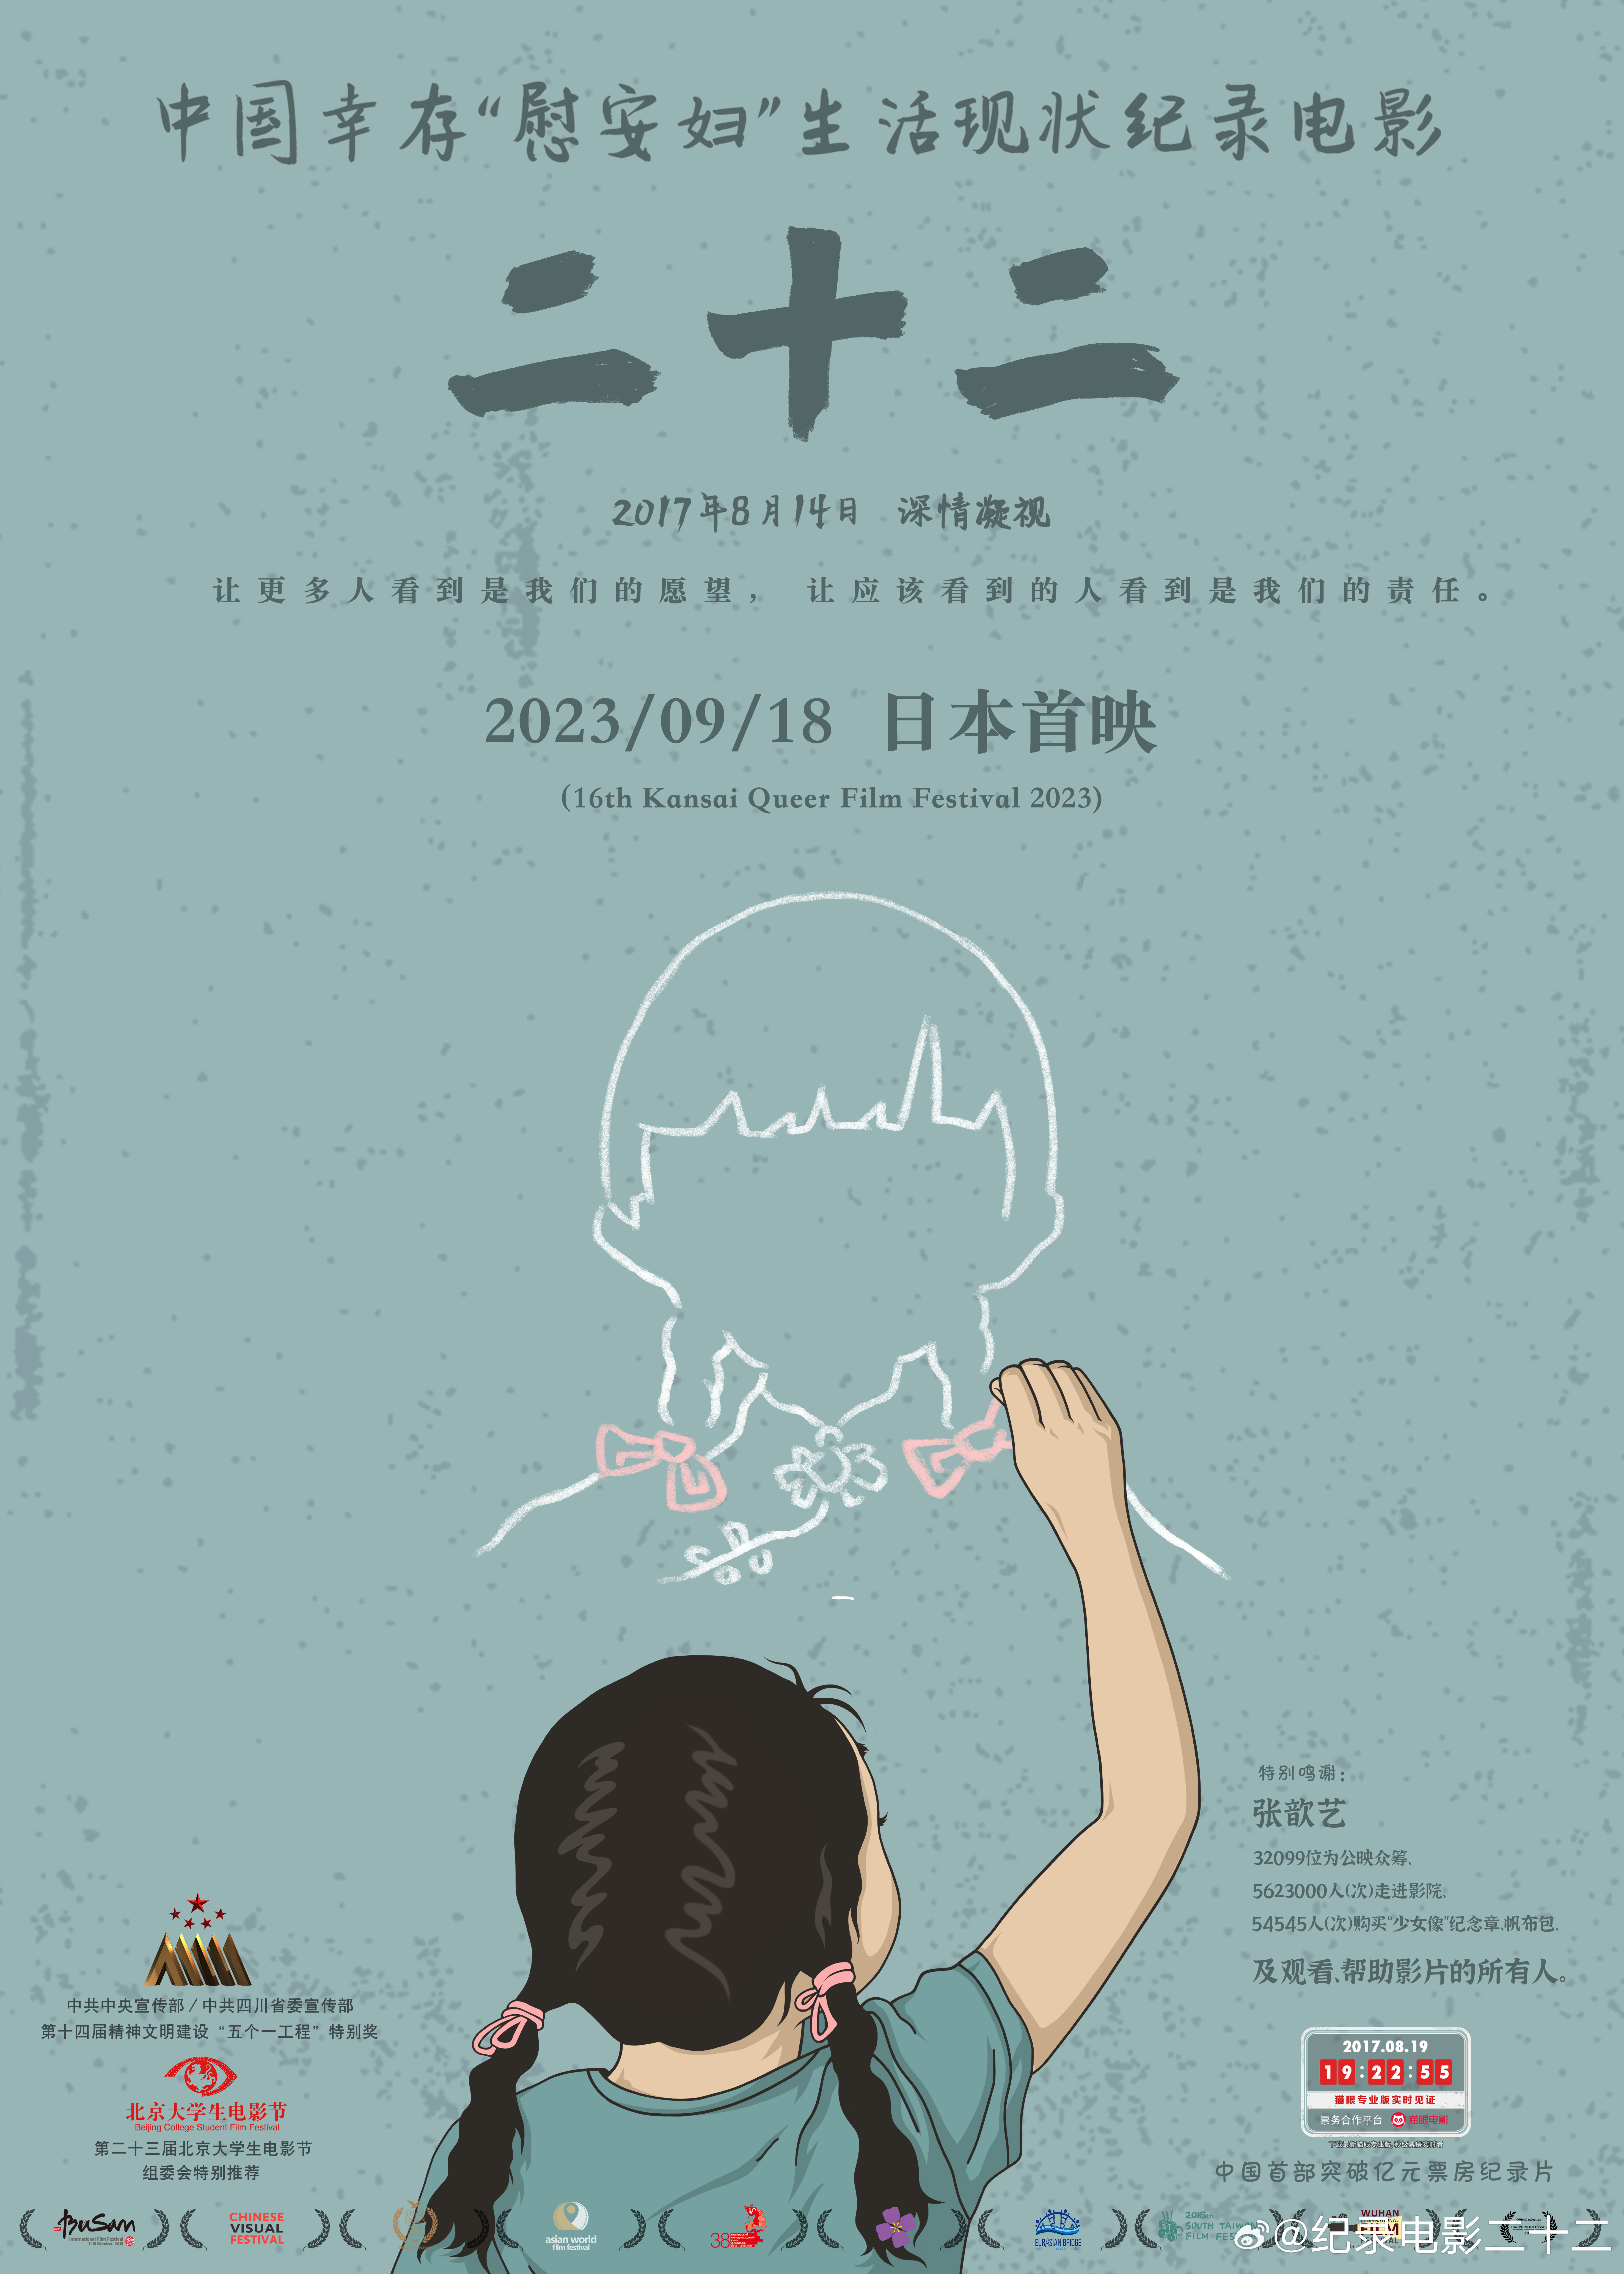 中国幸存“慰安妇”纪录片《二十二》在日本上映